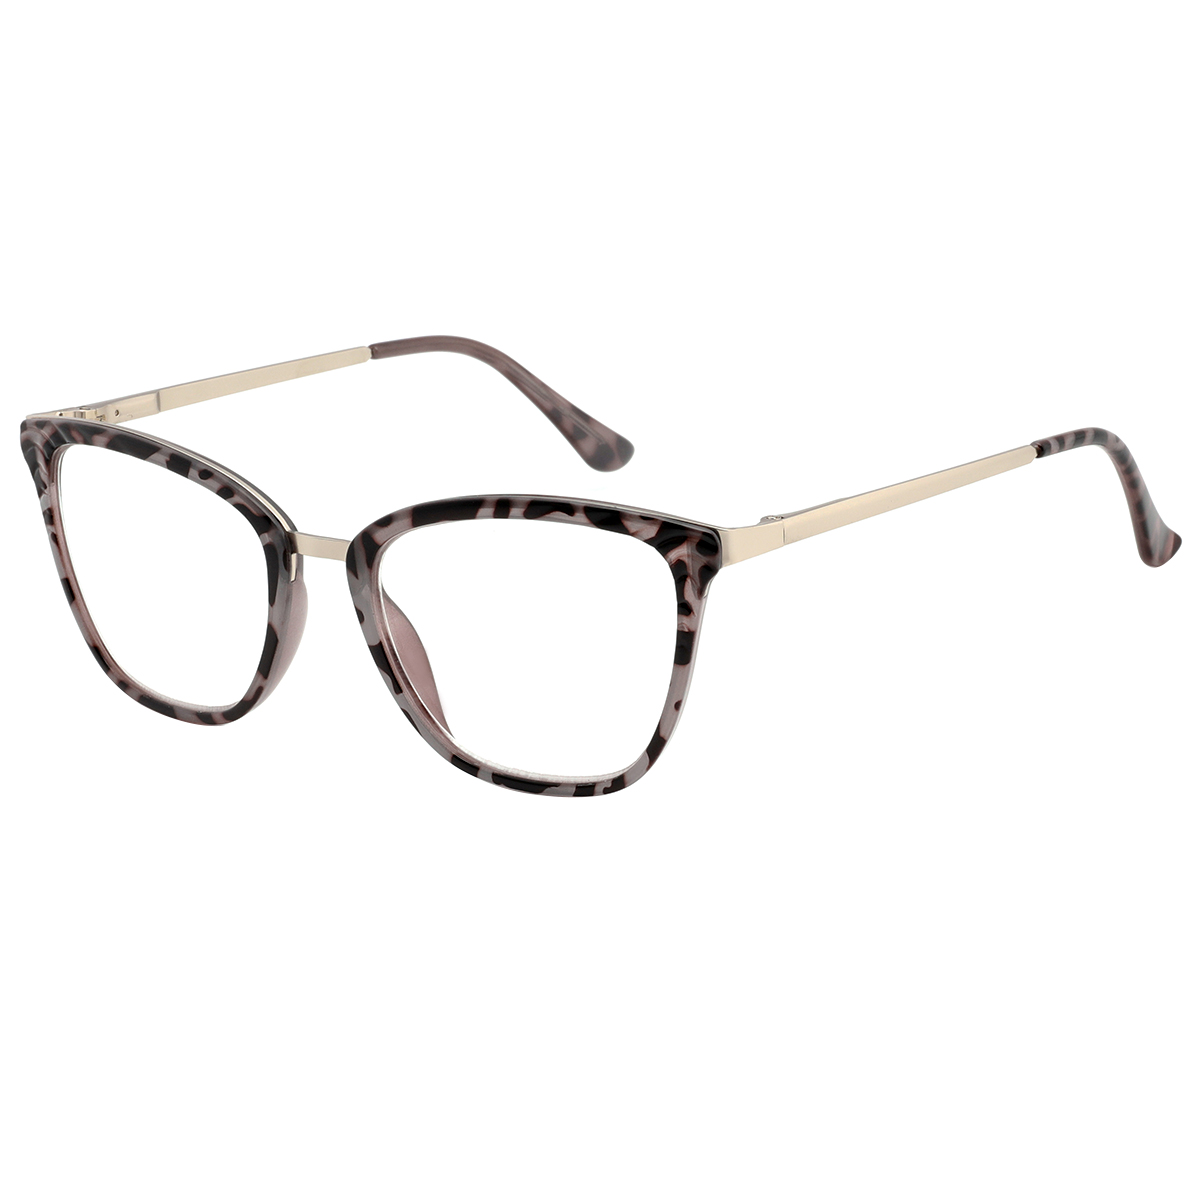 Regina - Cat-eye Demi-gray Reading Glasses for Women